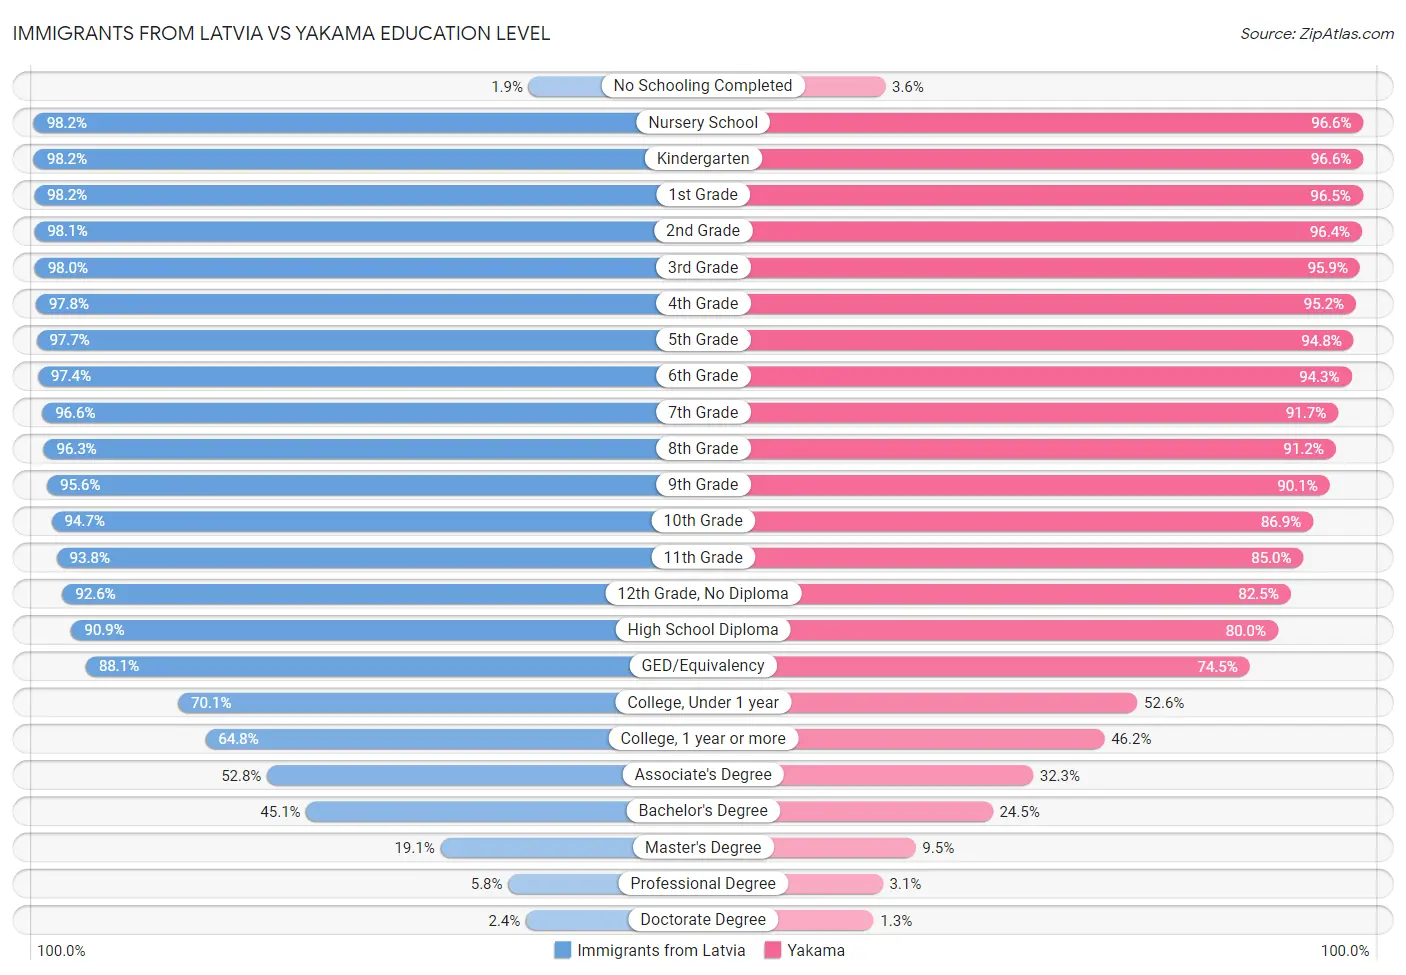 Immigrants from Latvia vs Yakama Education Level